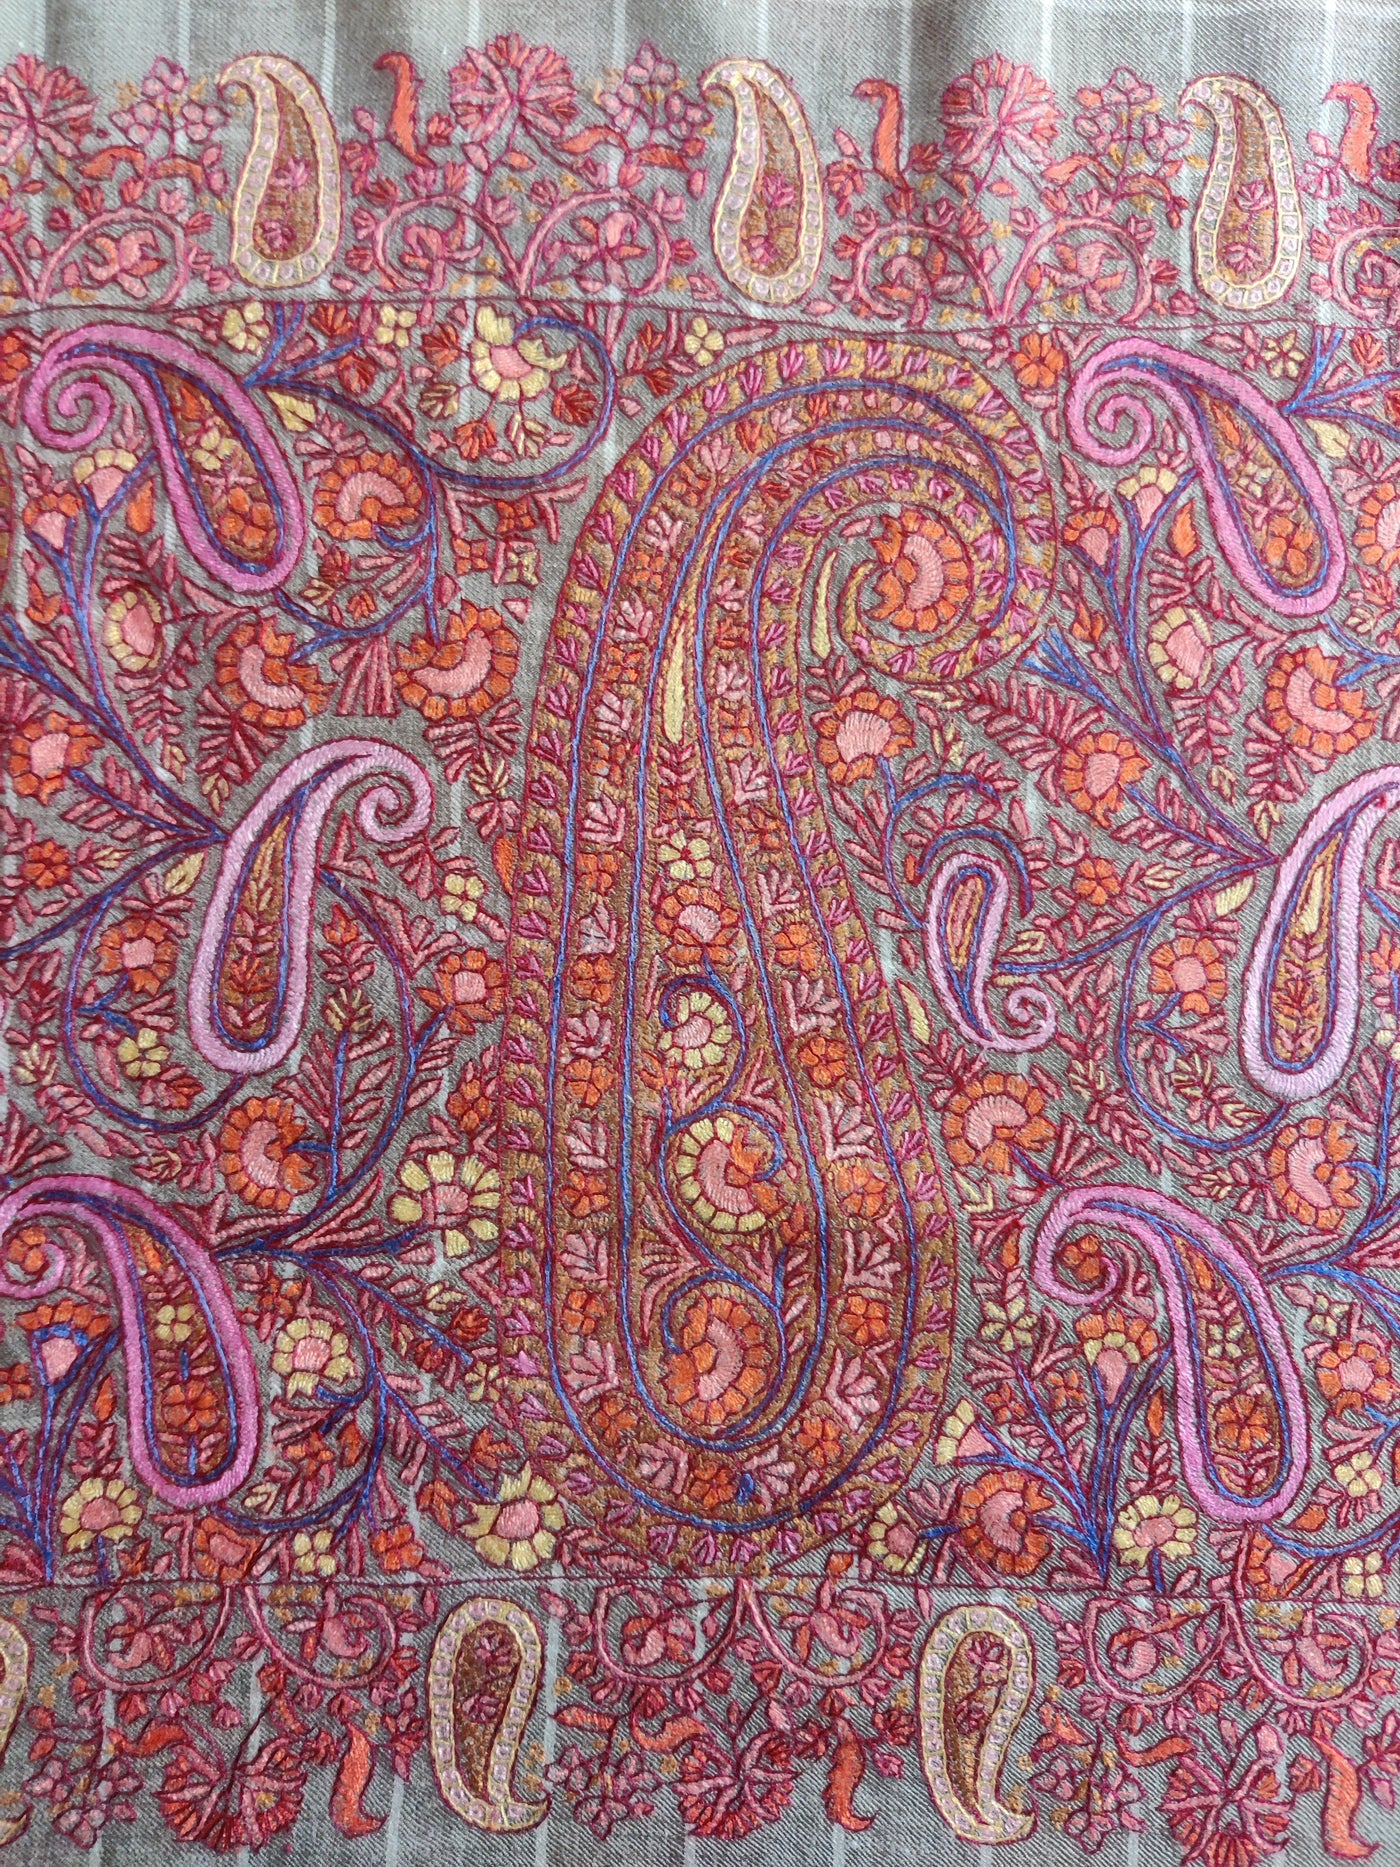 XL 3 Yards Roshanara Paisley Cascade: Pure Pashmina Shawl with Hand Sozni Embroidery